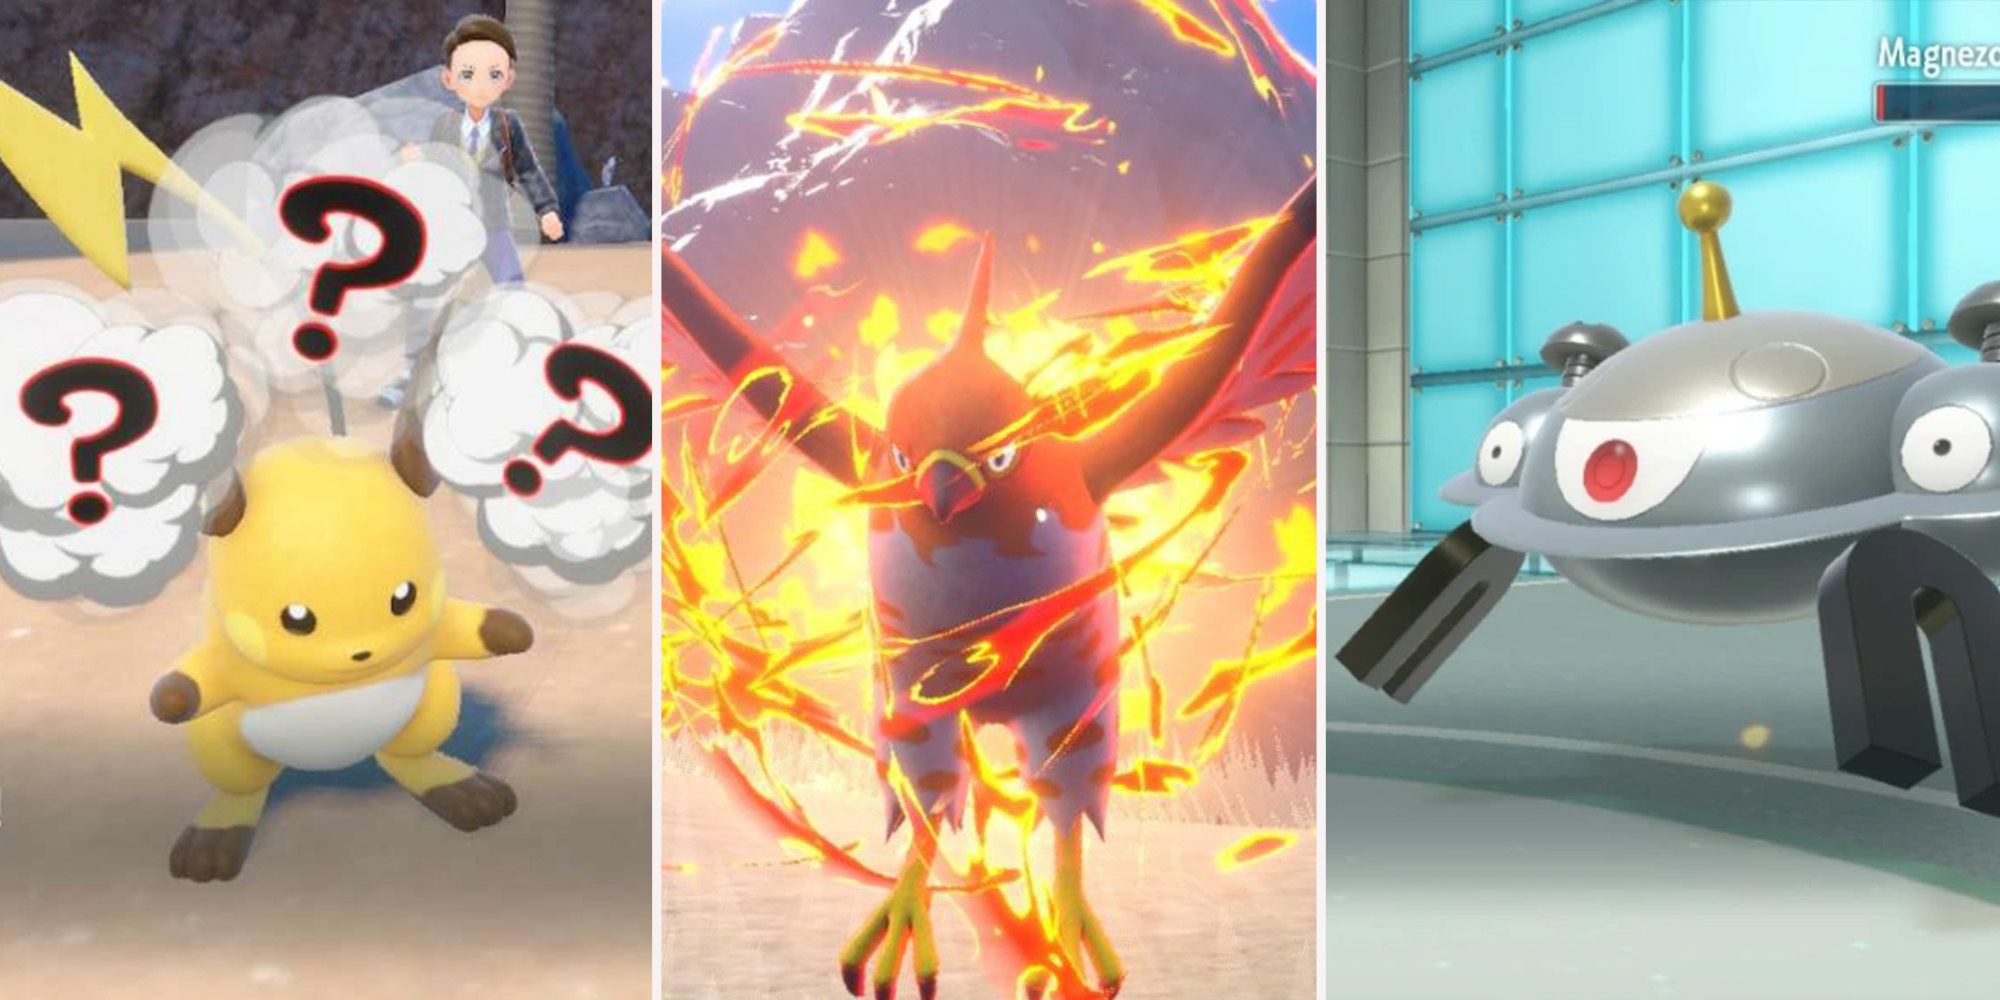 S/V] Best Pokemon for Tera Raid by Type - Flying : r/pokemon